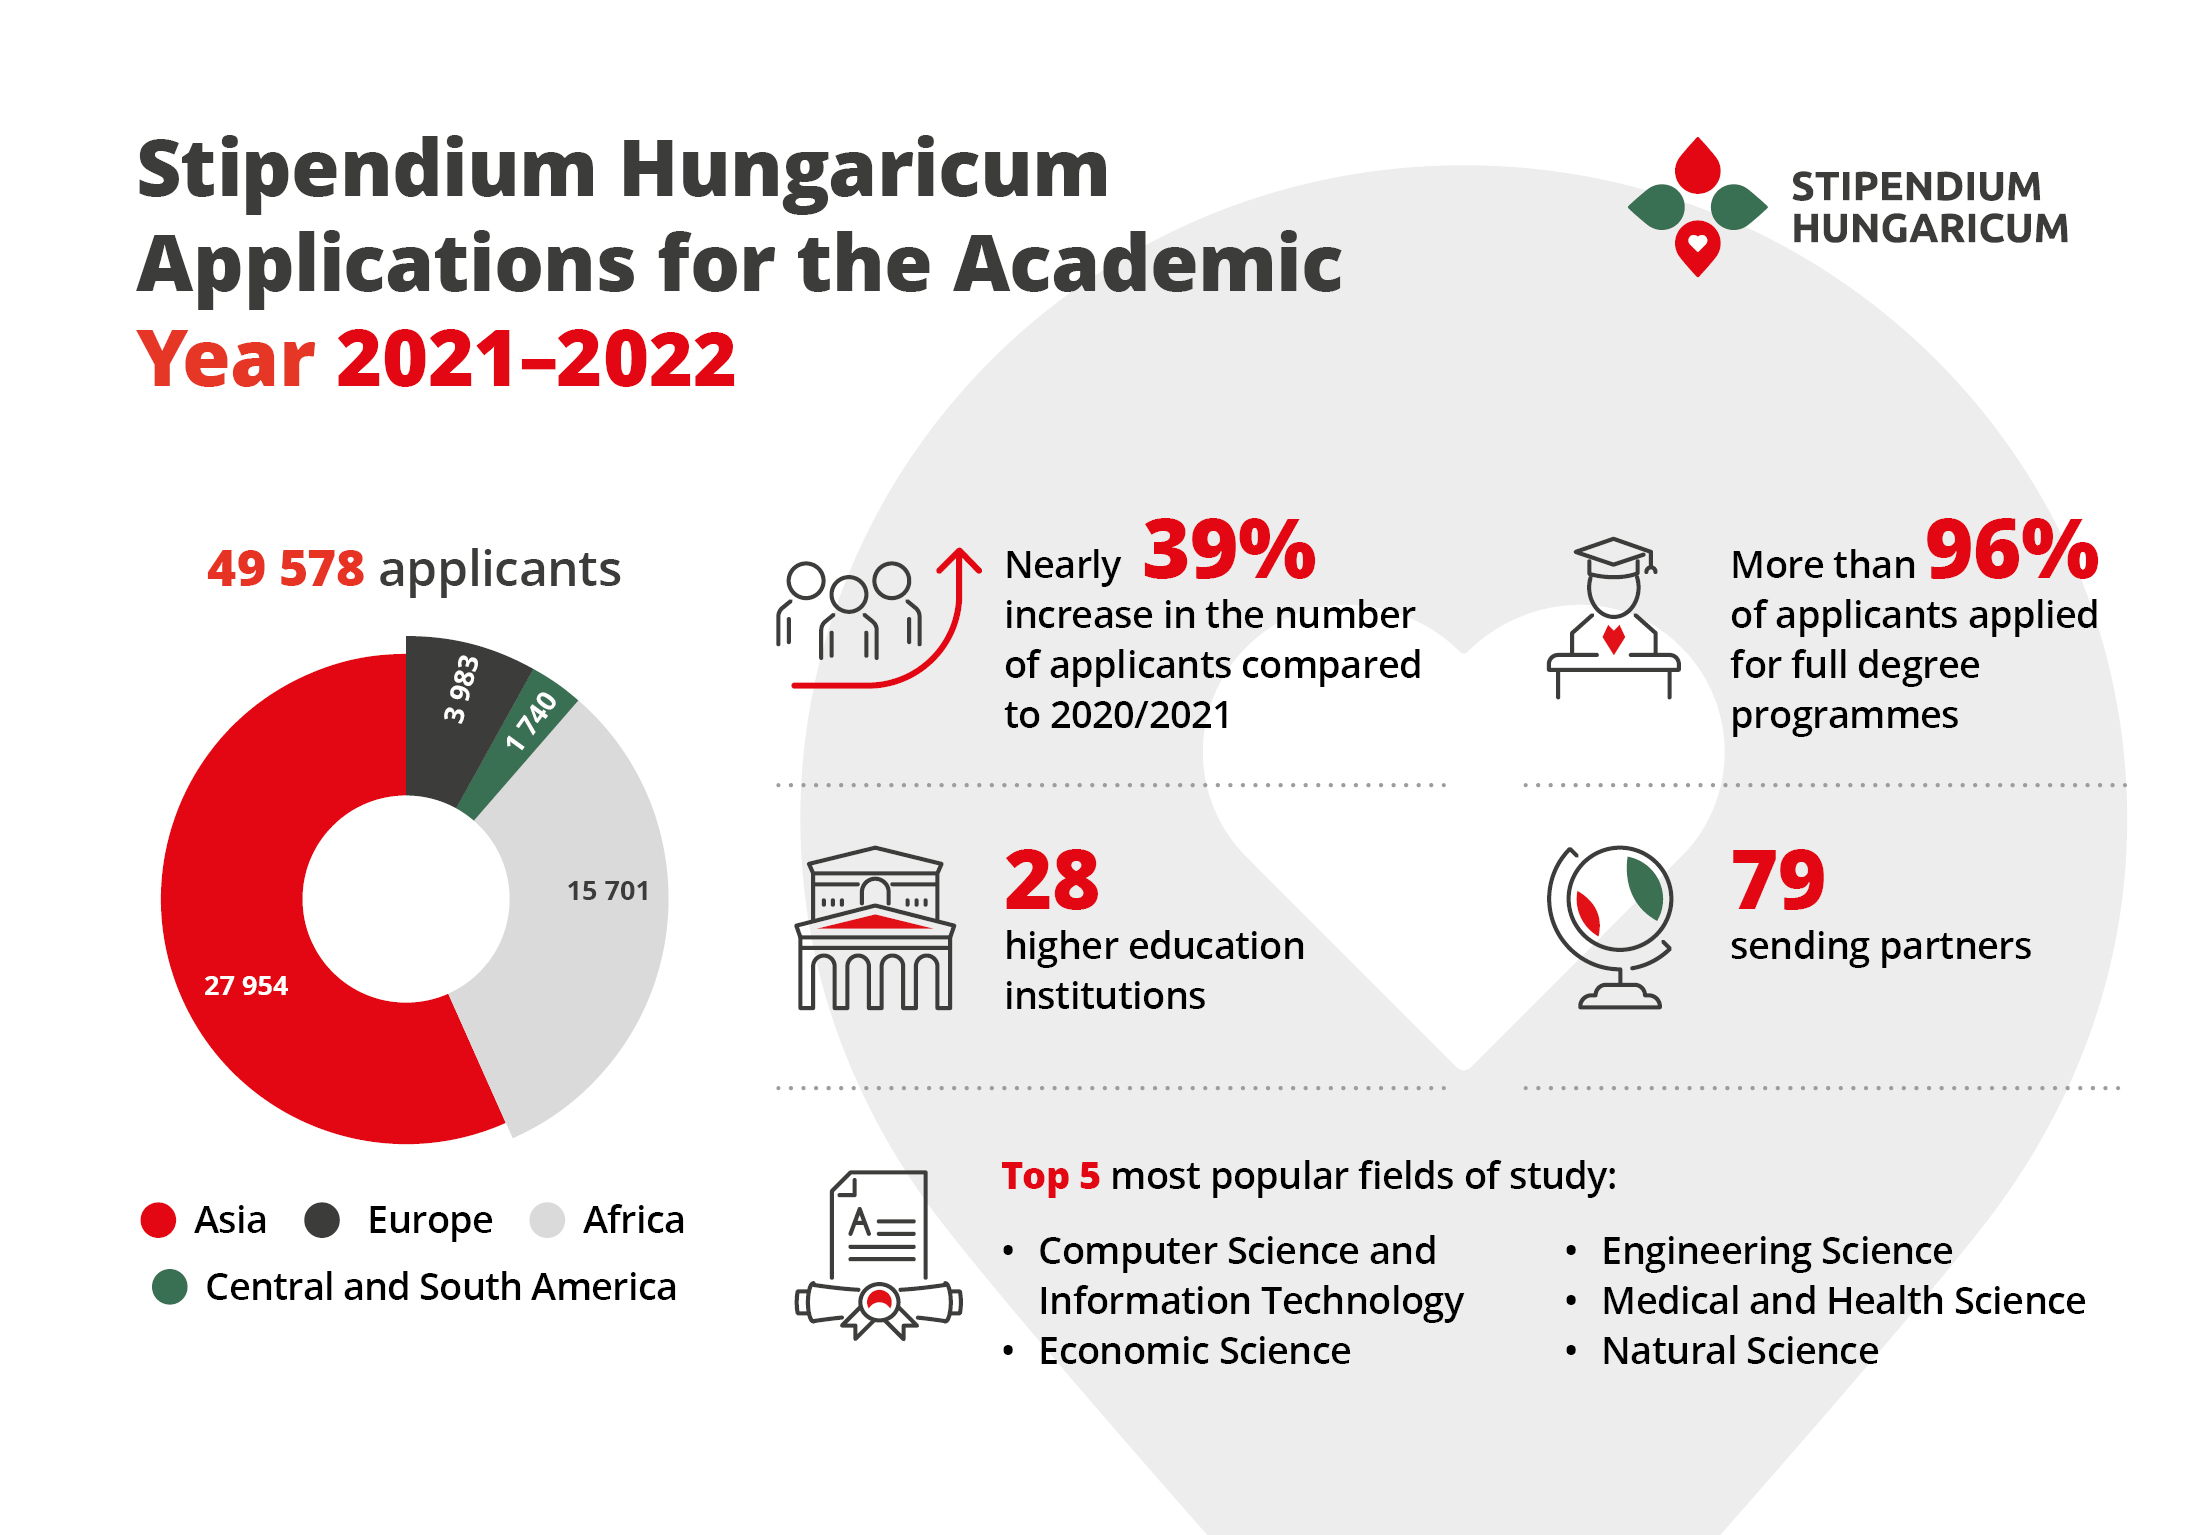 Stipendium Hungaricum scholarship application 